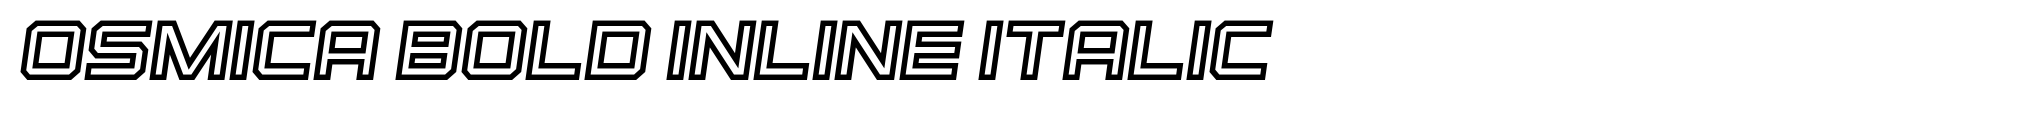 Osmica Bold Inline Italic image